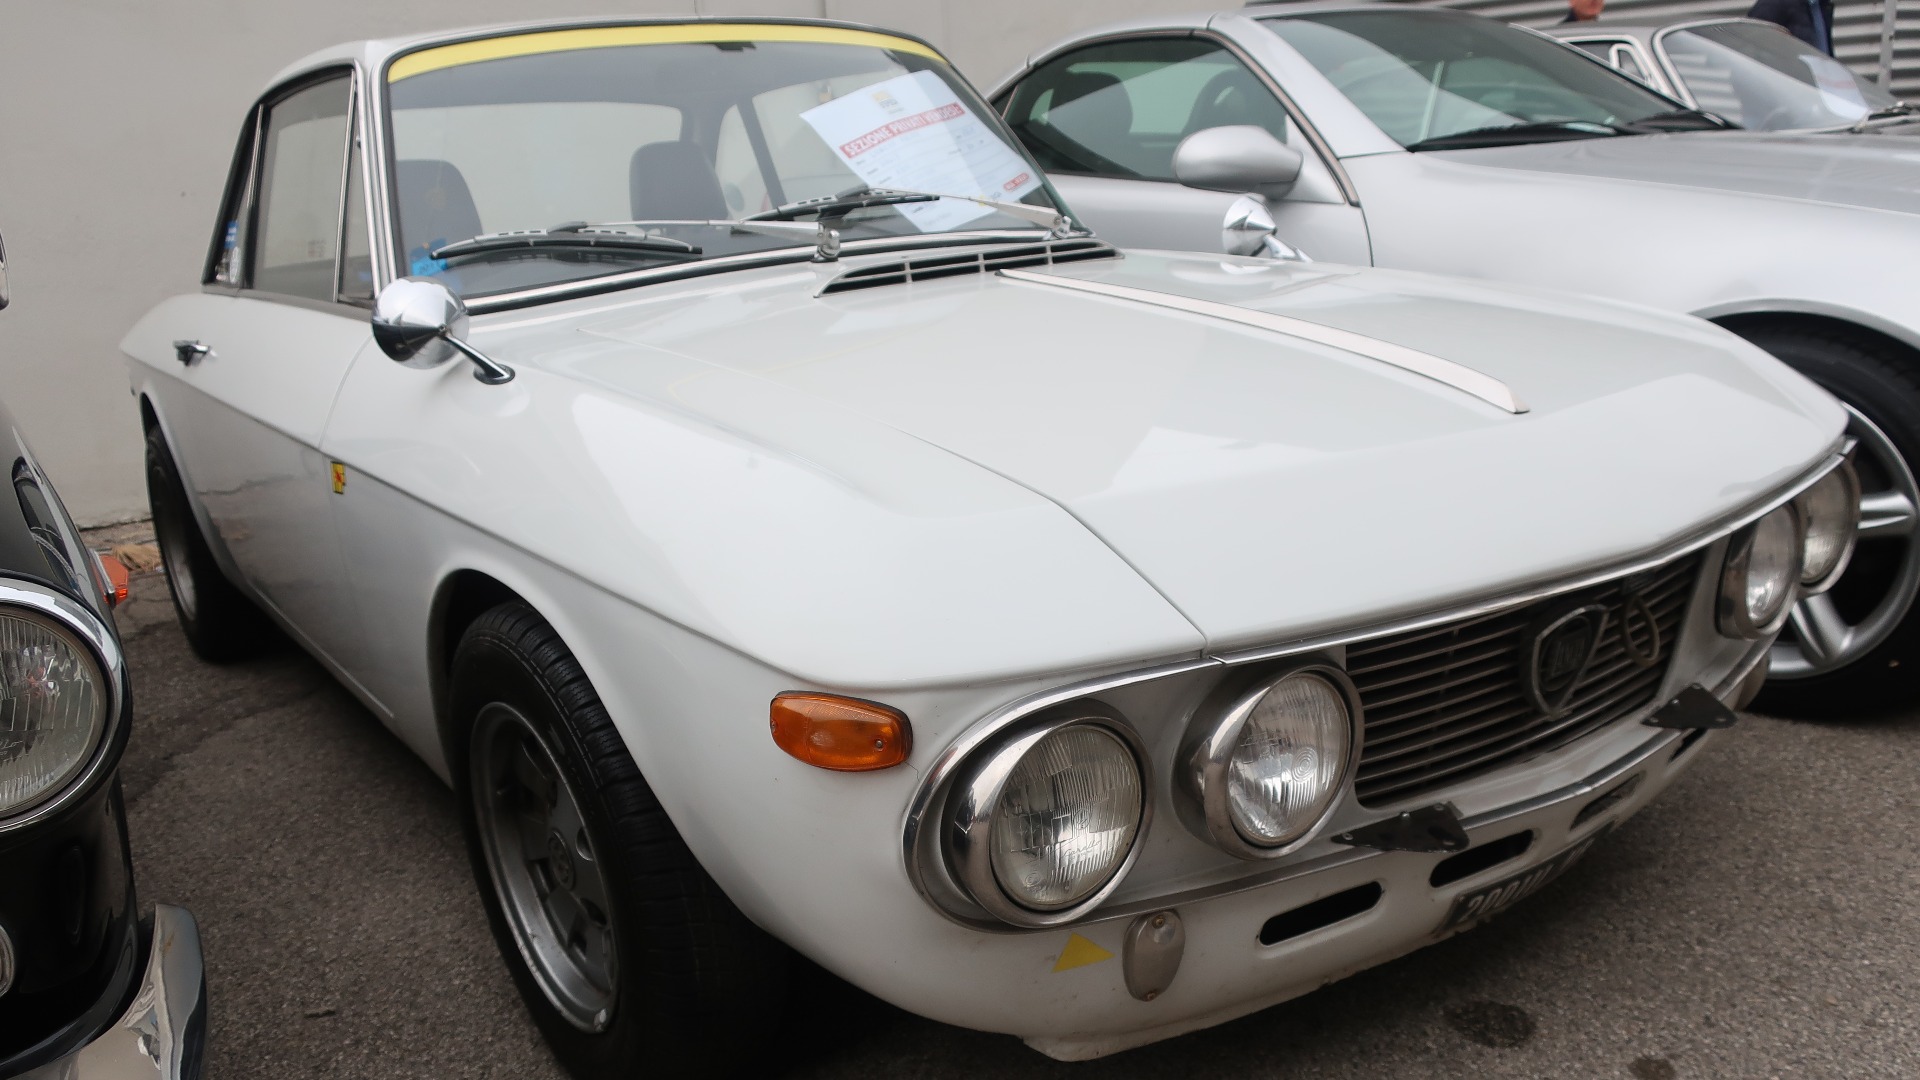 Herlig 1968 Lancia Fulvia til salgs for 22.000 Euro.